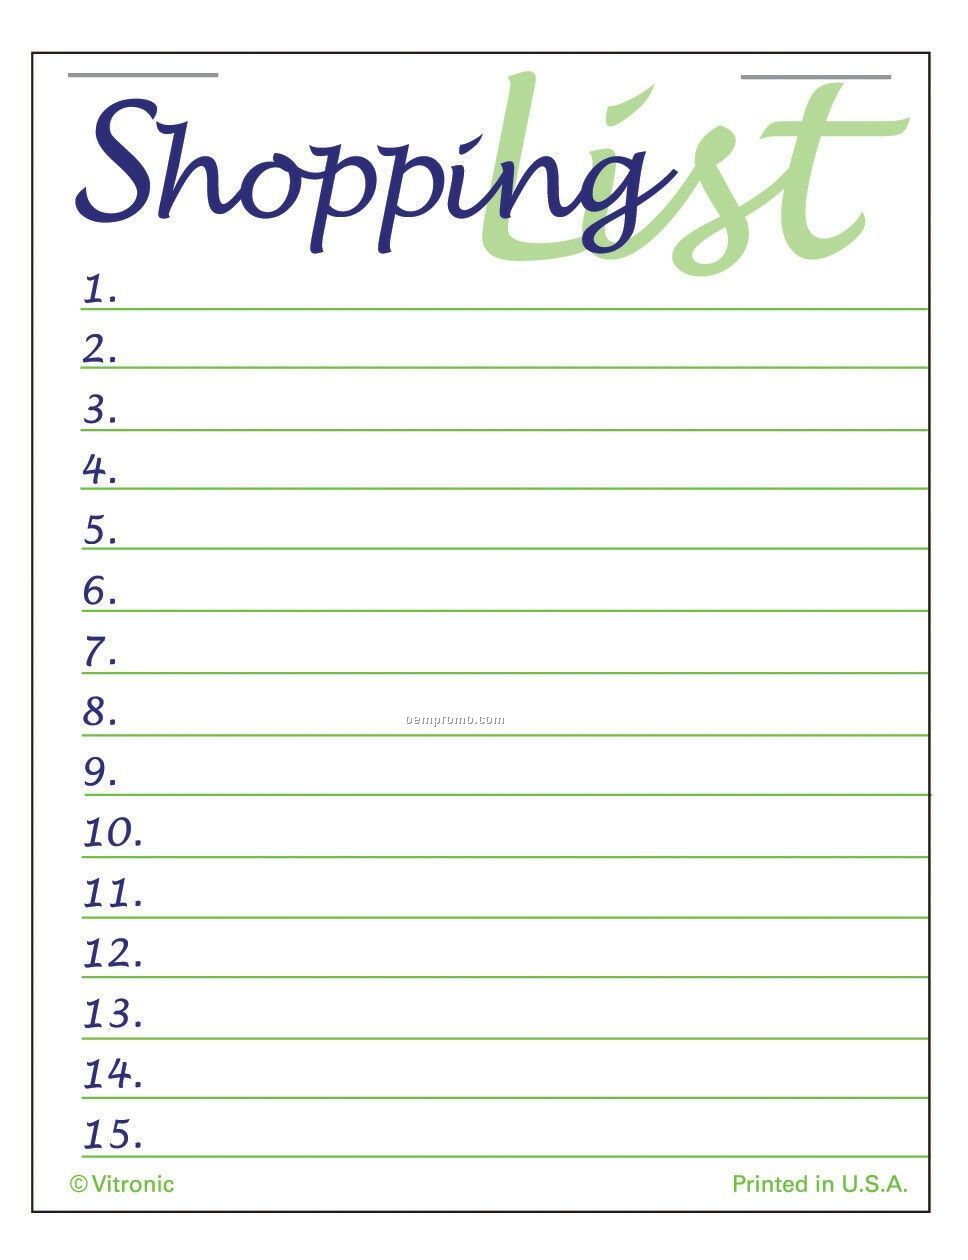 Super Size Shopping List Press-n-stick Calendar (After 8/1/2011)